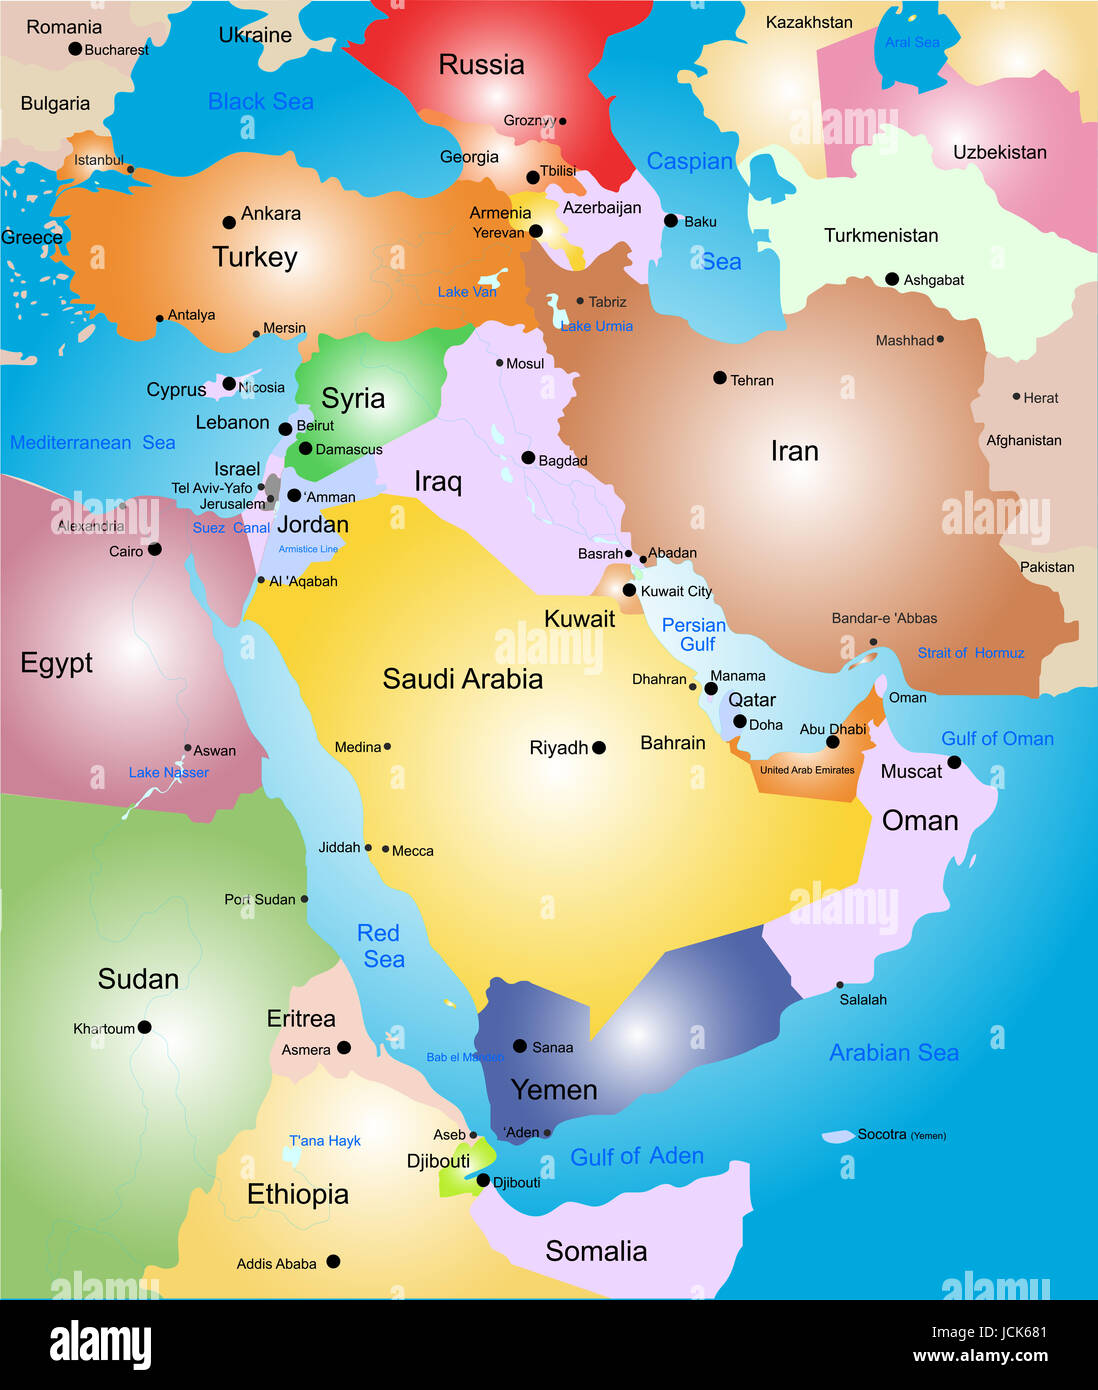 Qatar Political Map Fotograf As E Im Genes De Alta Resoluci N Alamy